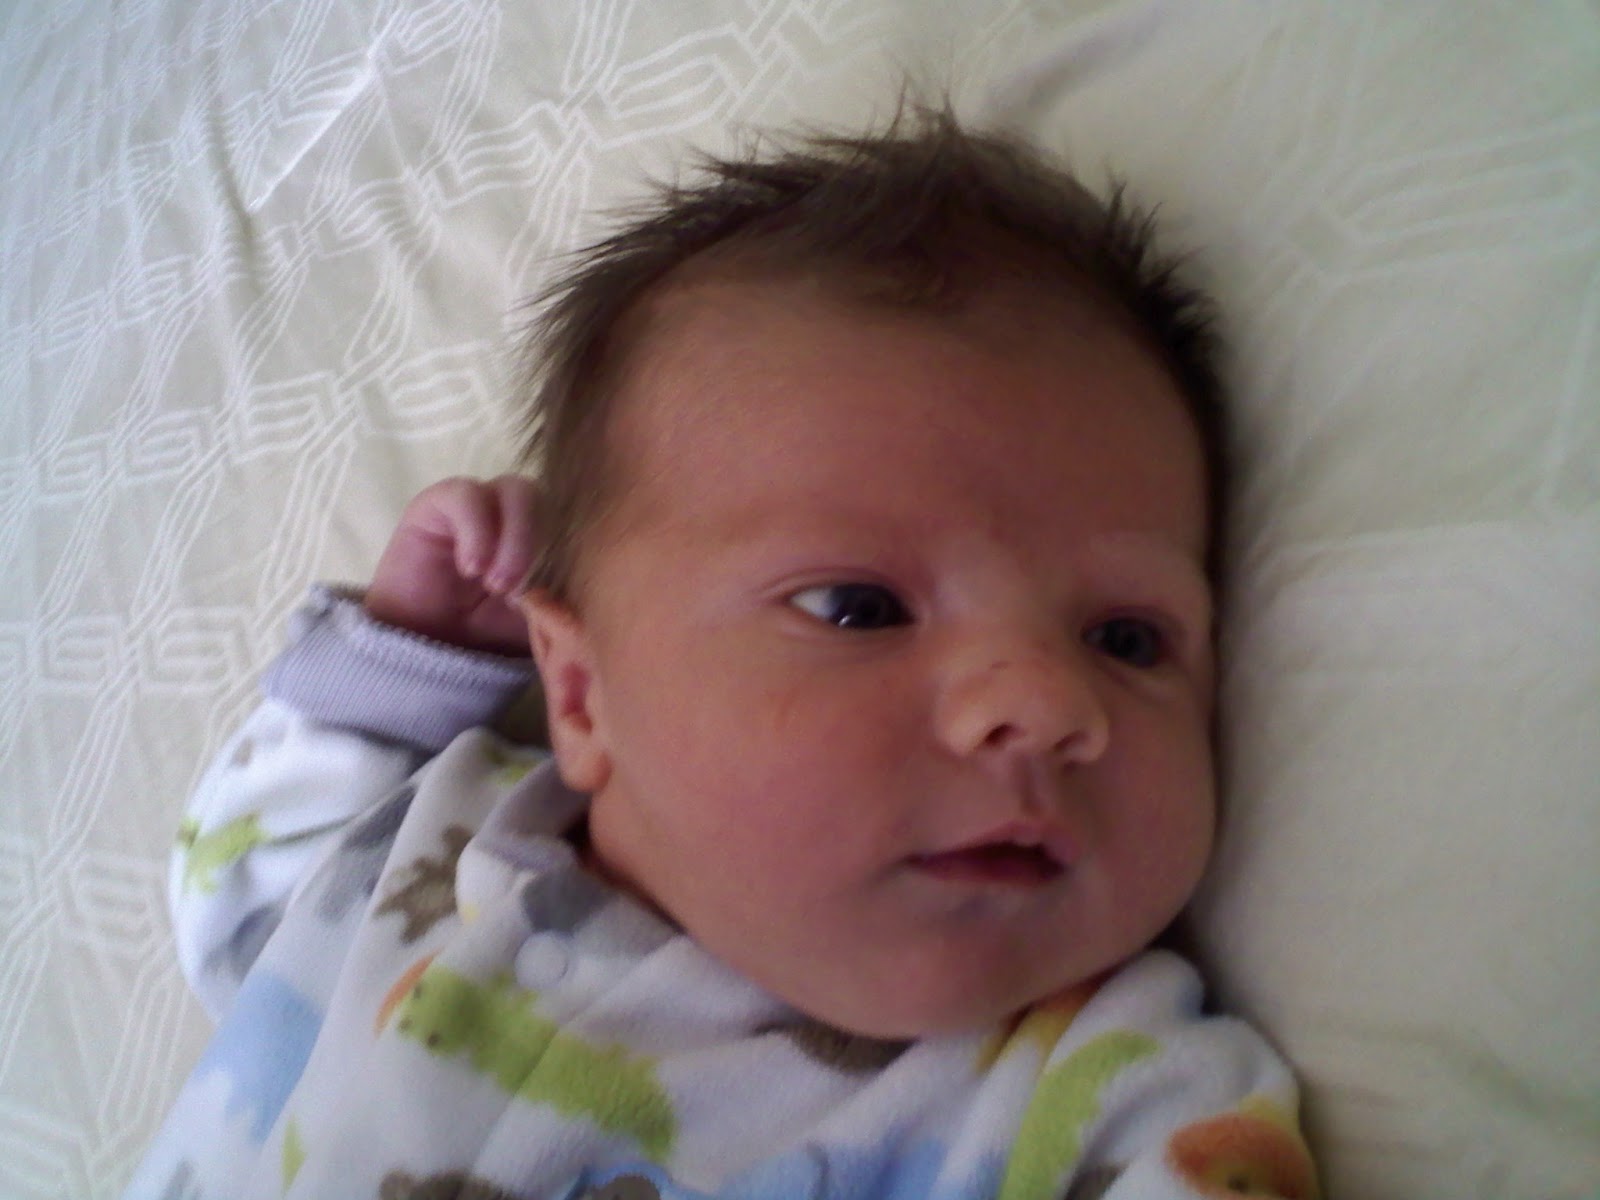 Nully Baby Blog: 2 Week Checkup